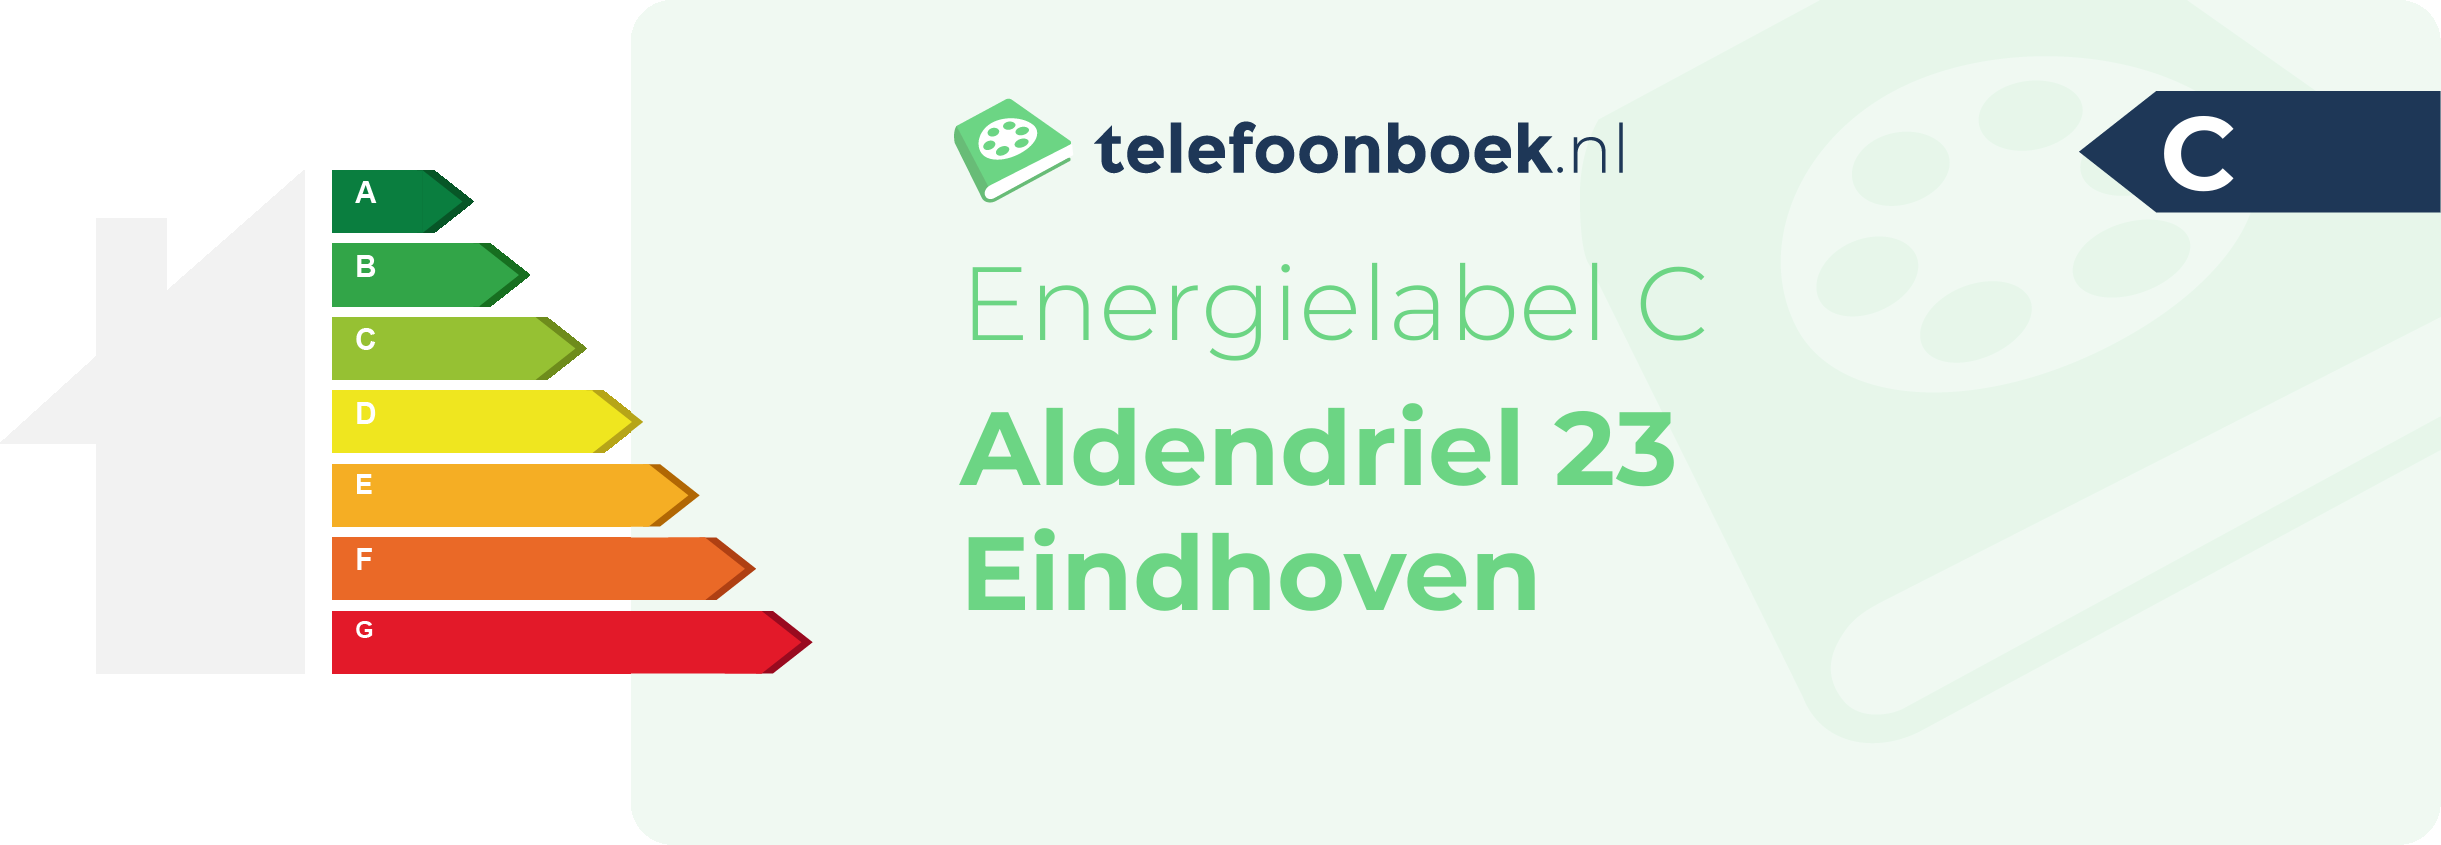 Energielabel Aldendriel 23 Eindhoven